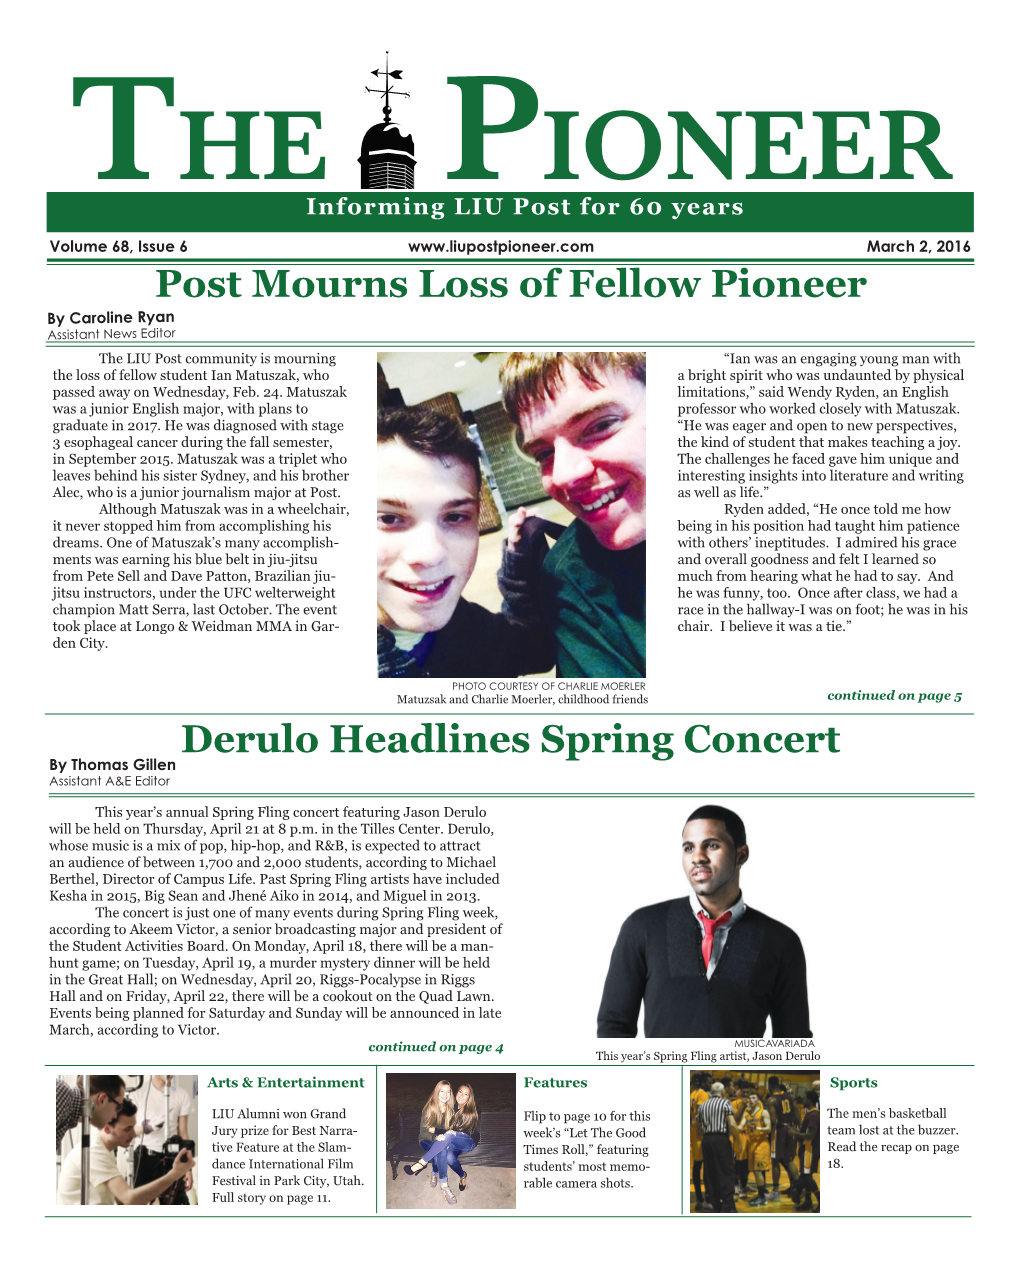 Derulo Headlines Spring Concert Post Mourns Loss of Fellow Pioneer